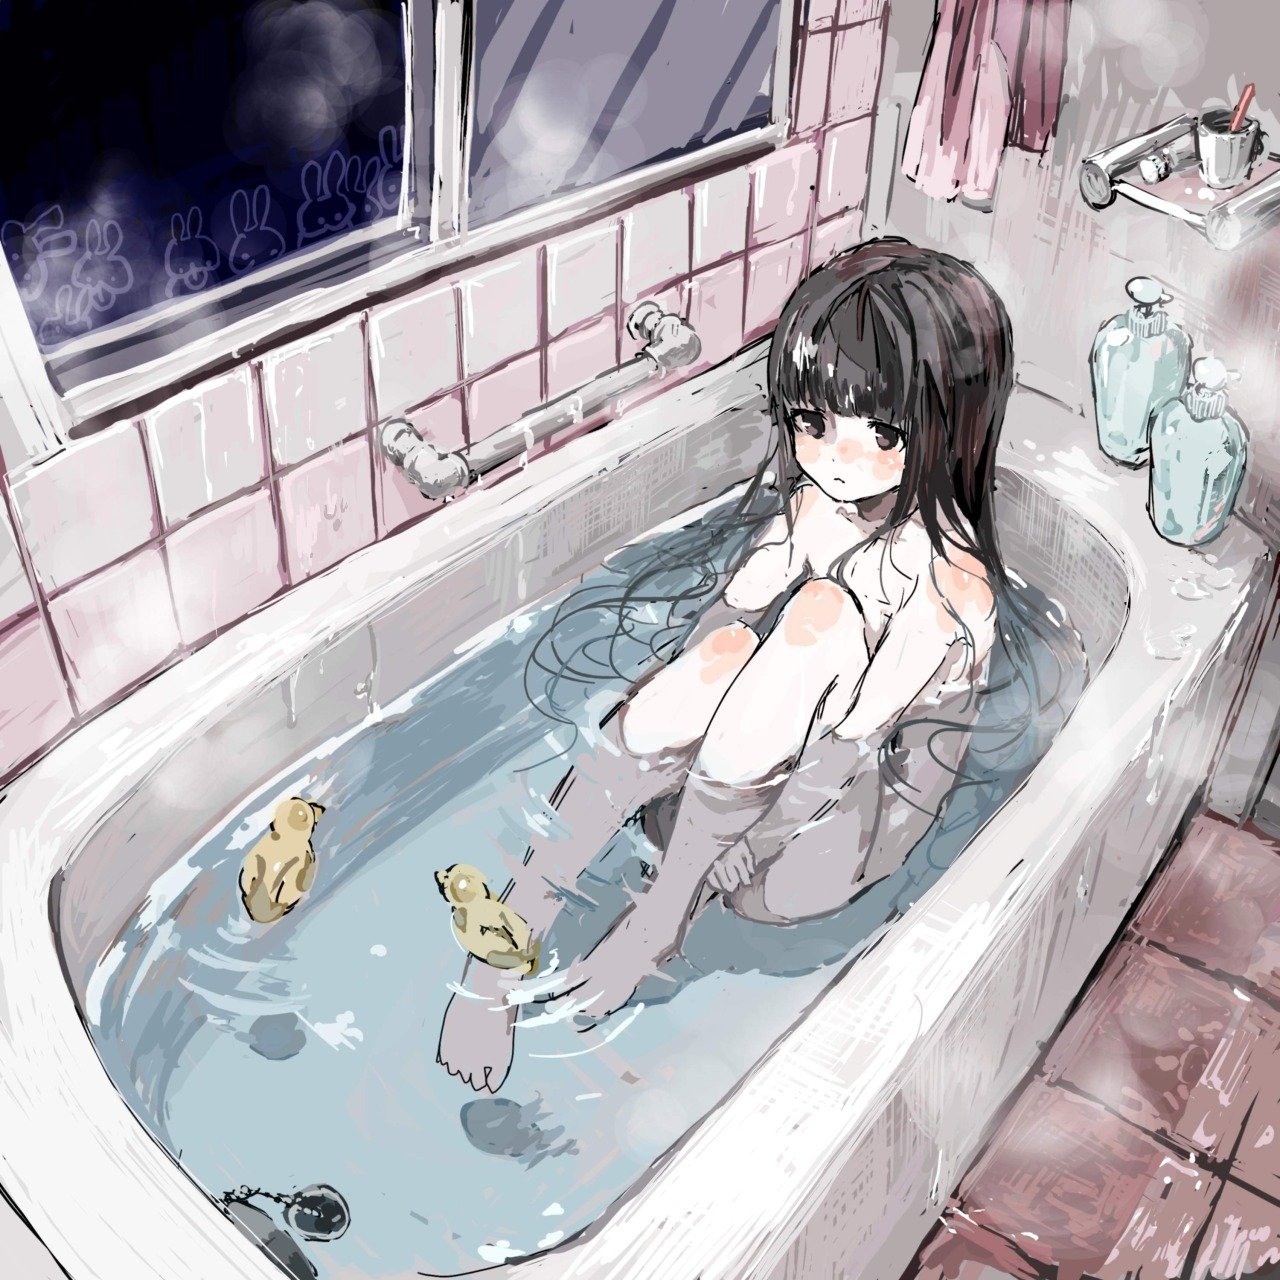 Смачное БДСМ с девушкой в ванной на полу